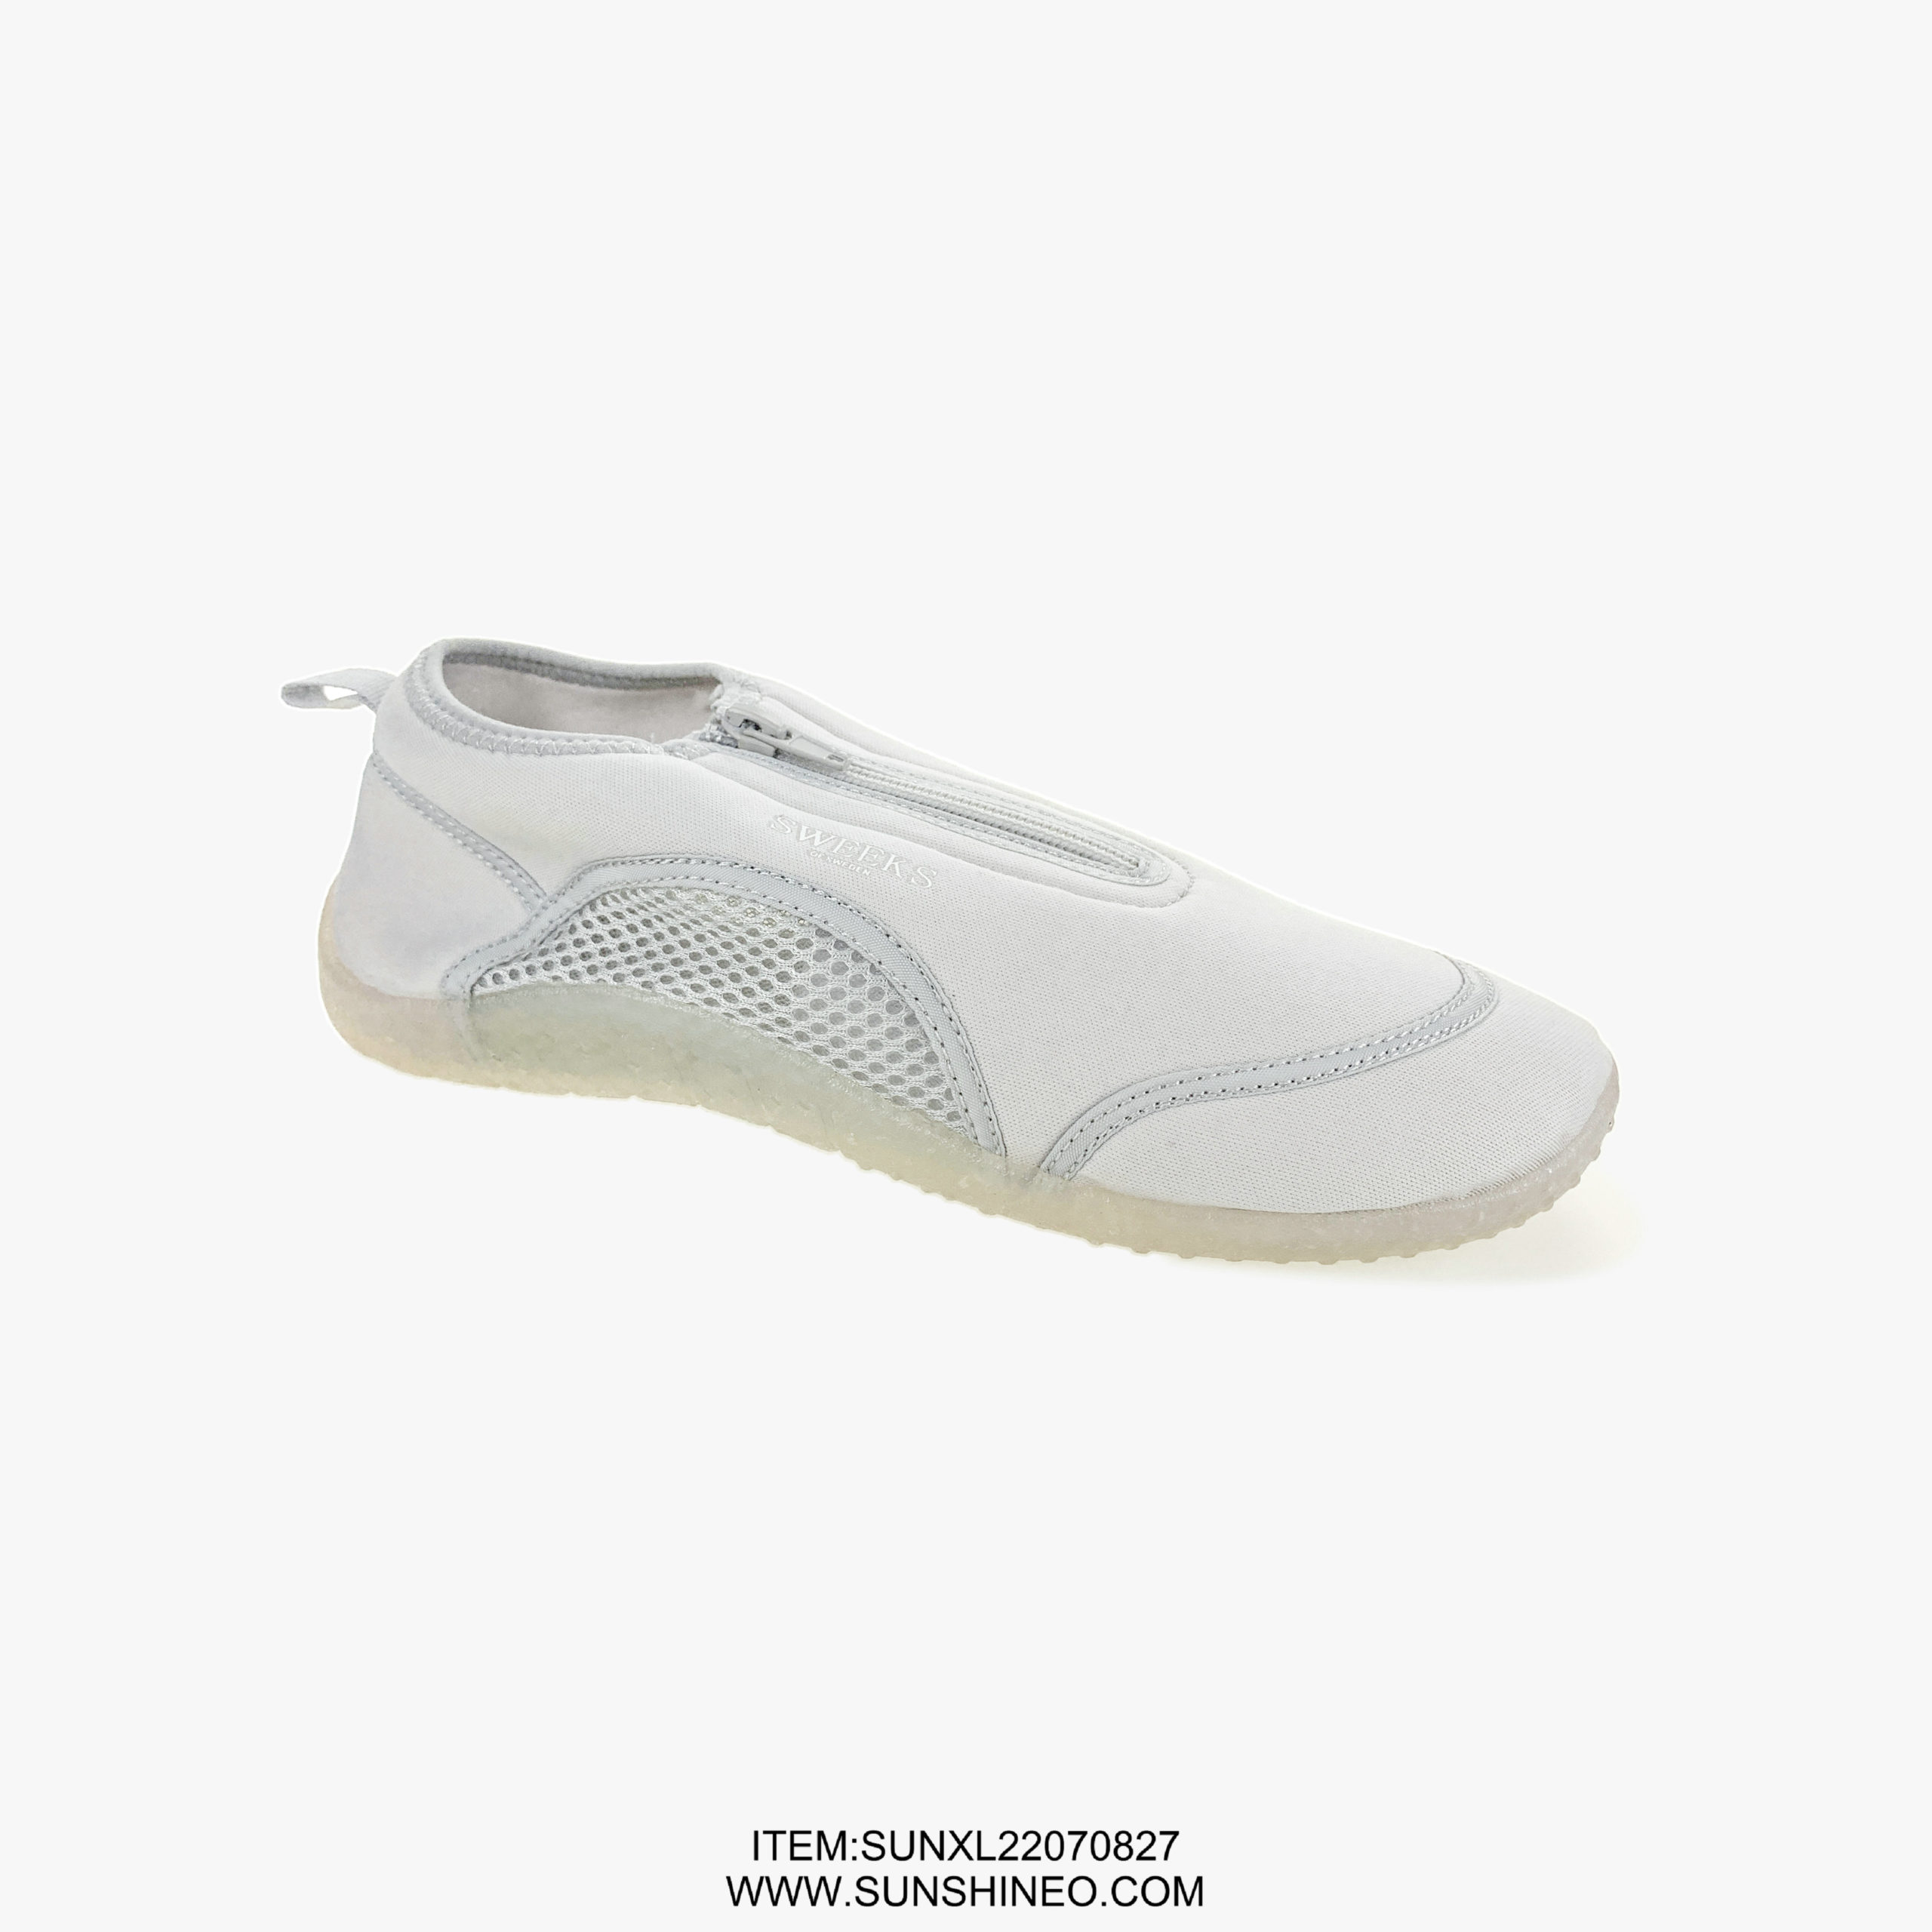 SUNXL22070827 flip flop sandals